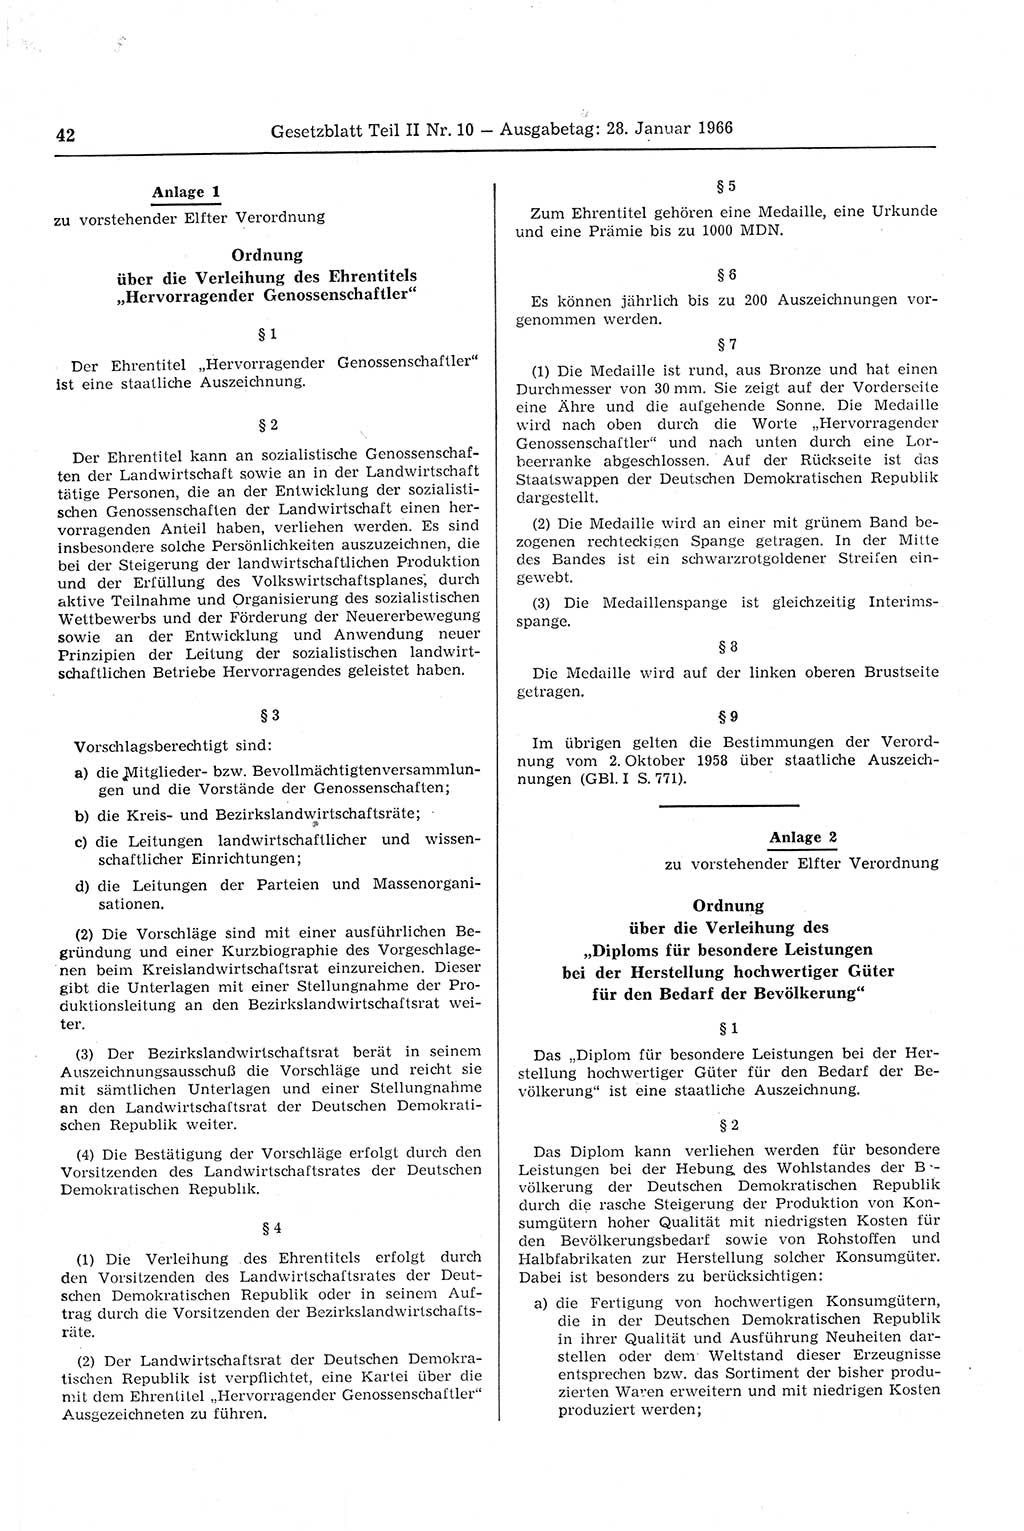 Gesetzblatt (GBl.) der Deutschen Demokratischen Republik (DDR) Teil ⅠⅠ 1966, Seite 42 (GBl. DDR ⅠⅠ 1966, S. 42)